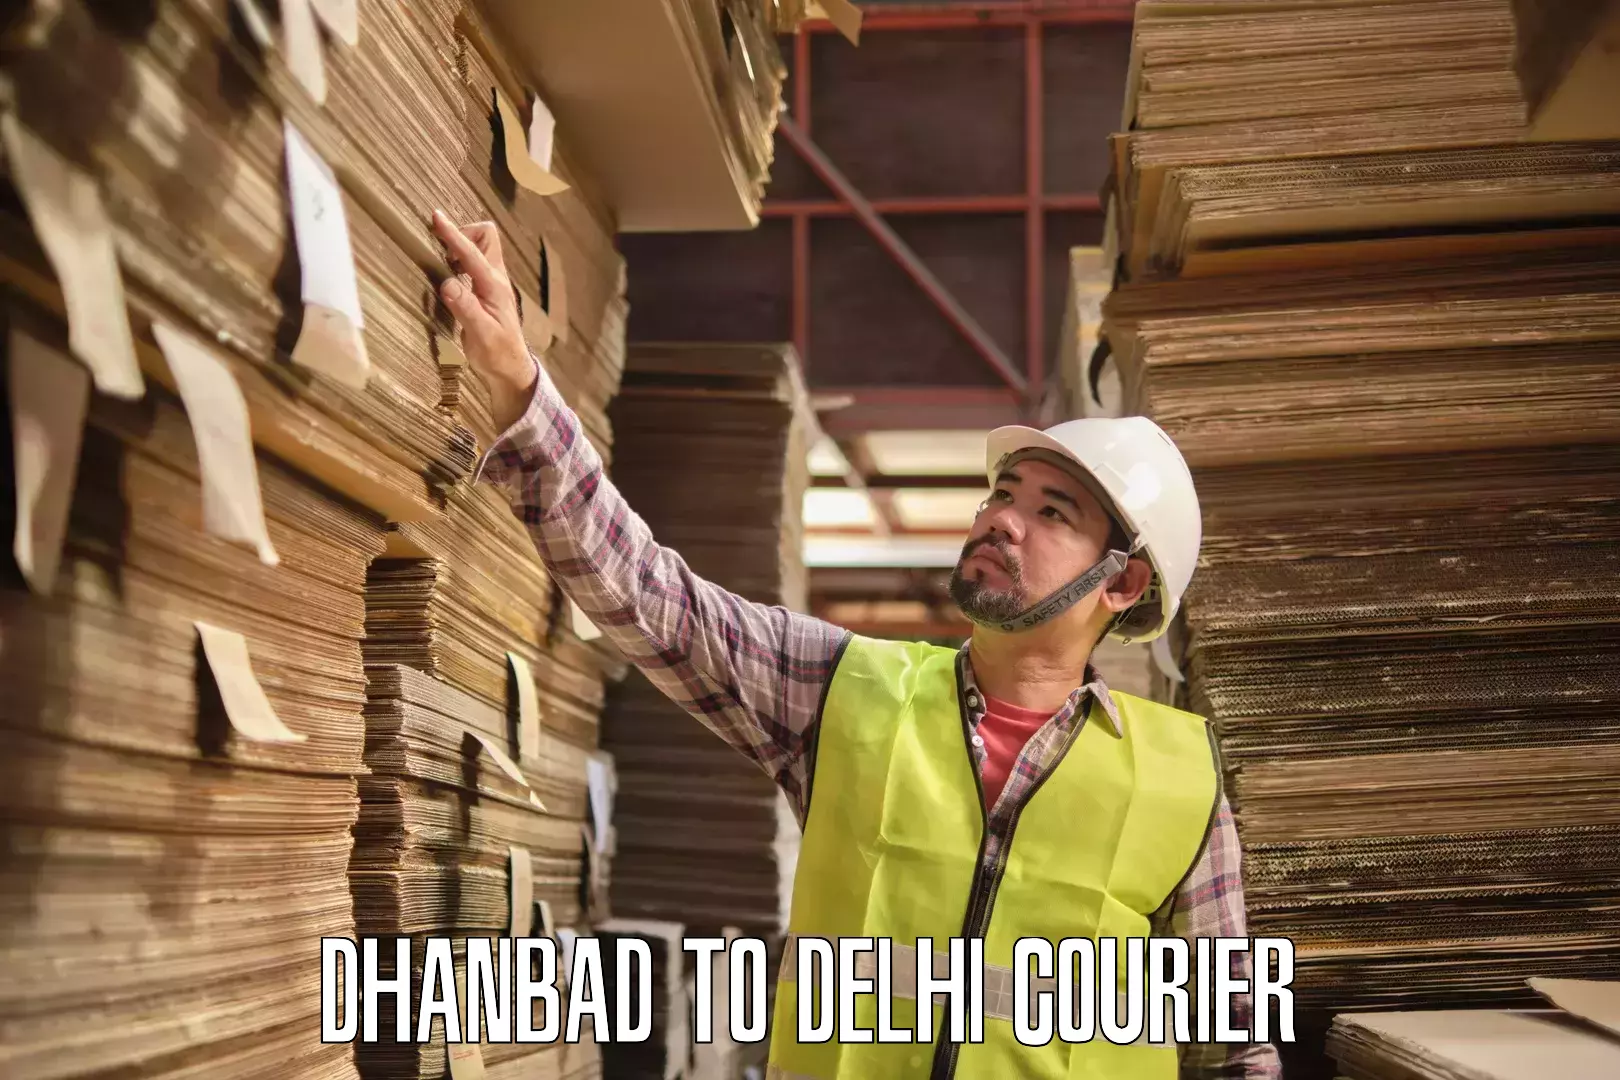 Courier service comparison Dhanbad to Jamia Millia Islamia New Delhi